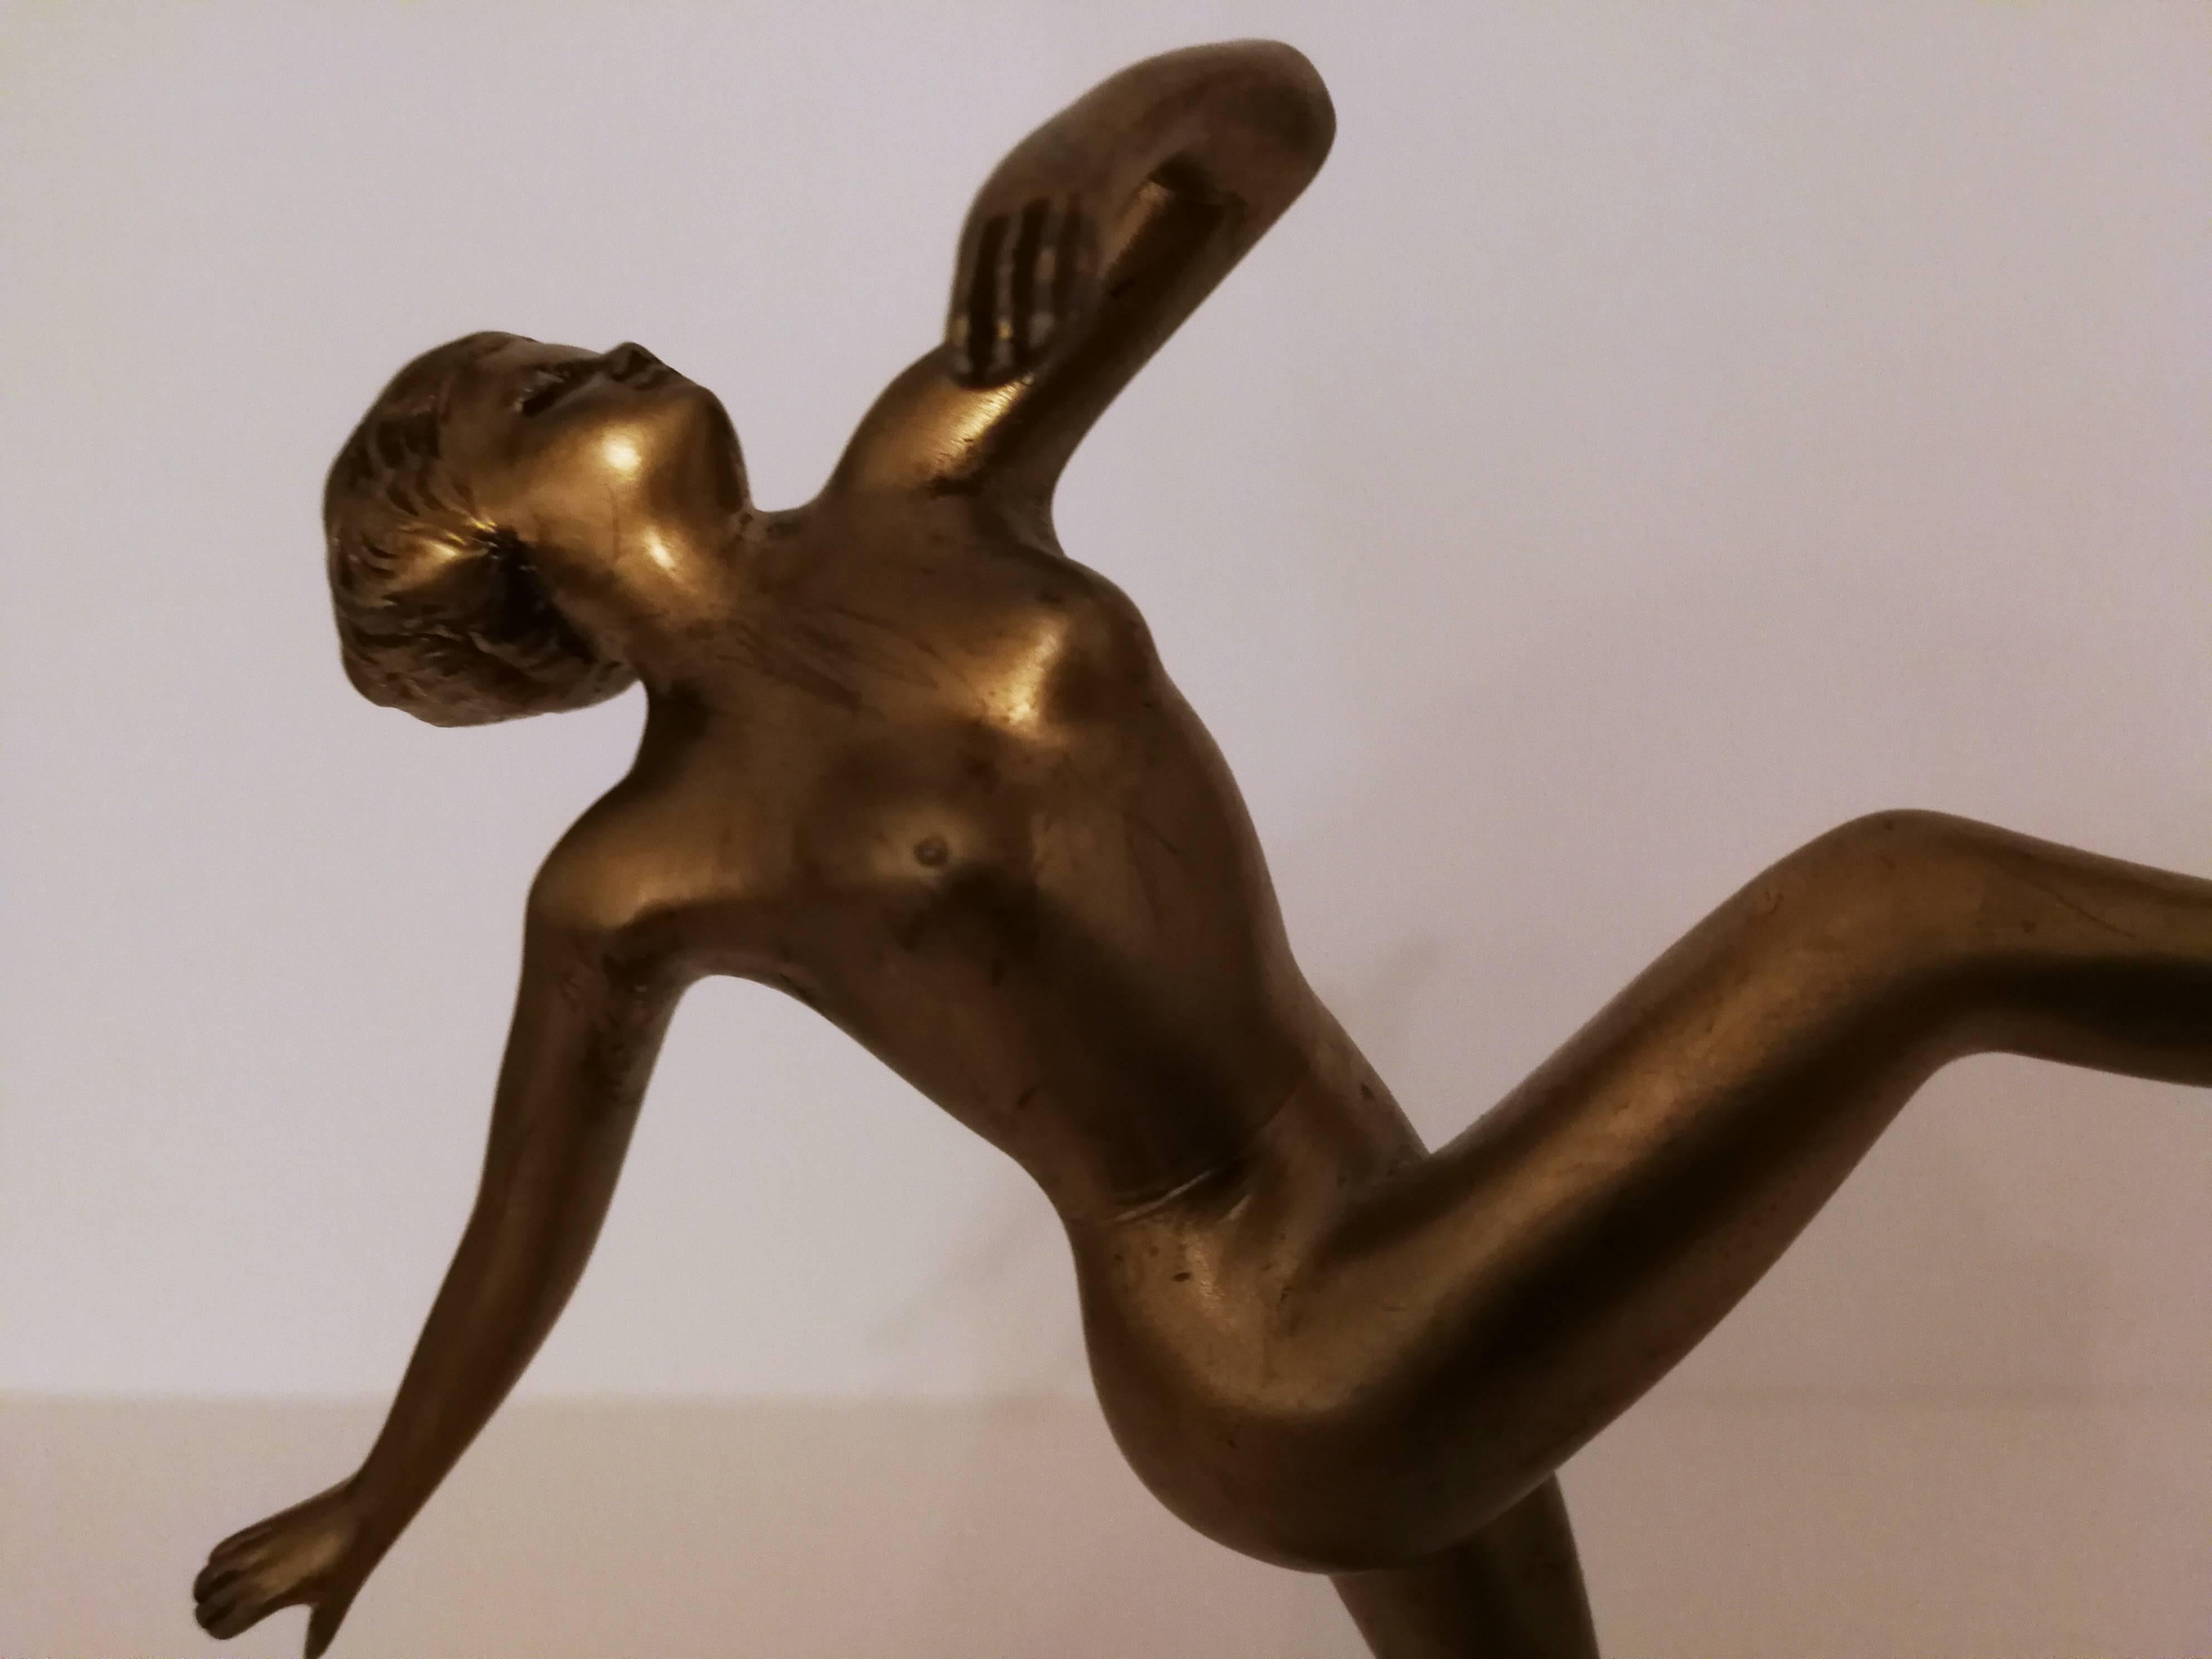 Tänzerin mit erhobenem Bein (Dancer with raised leg) - Gold Nude Sculpture by Josef Lorenzl